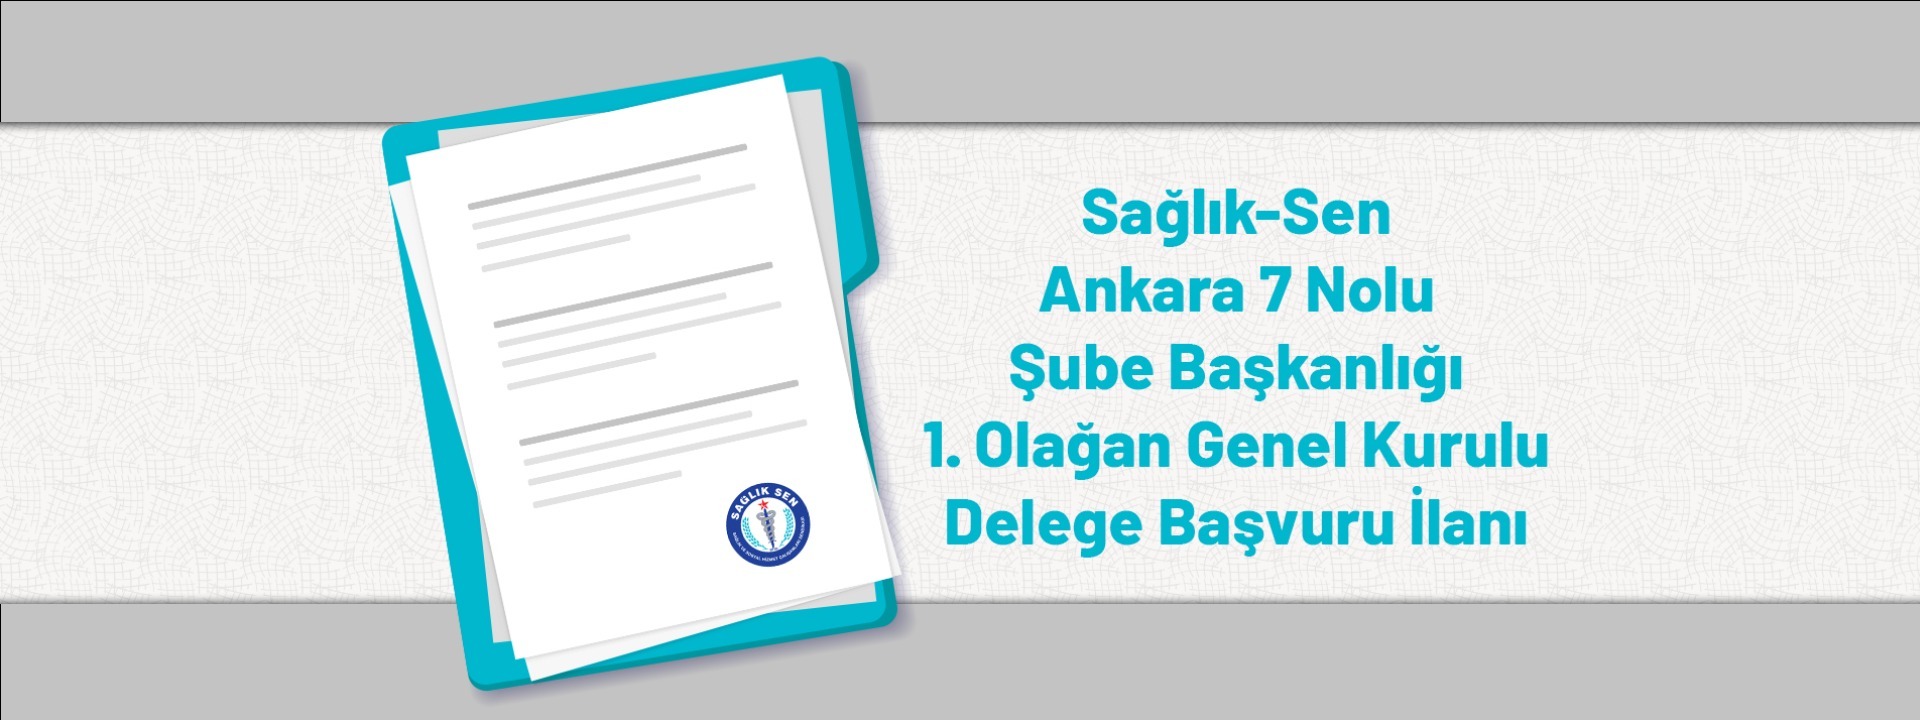 Sağlık-Sen Ankara 7 Nolu Şube Başkanlığı 1. Olağan Genel Kurulu Delege Başvuru İlanı